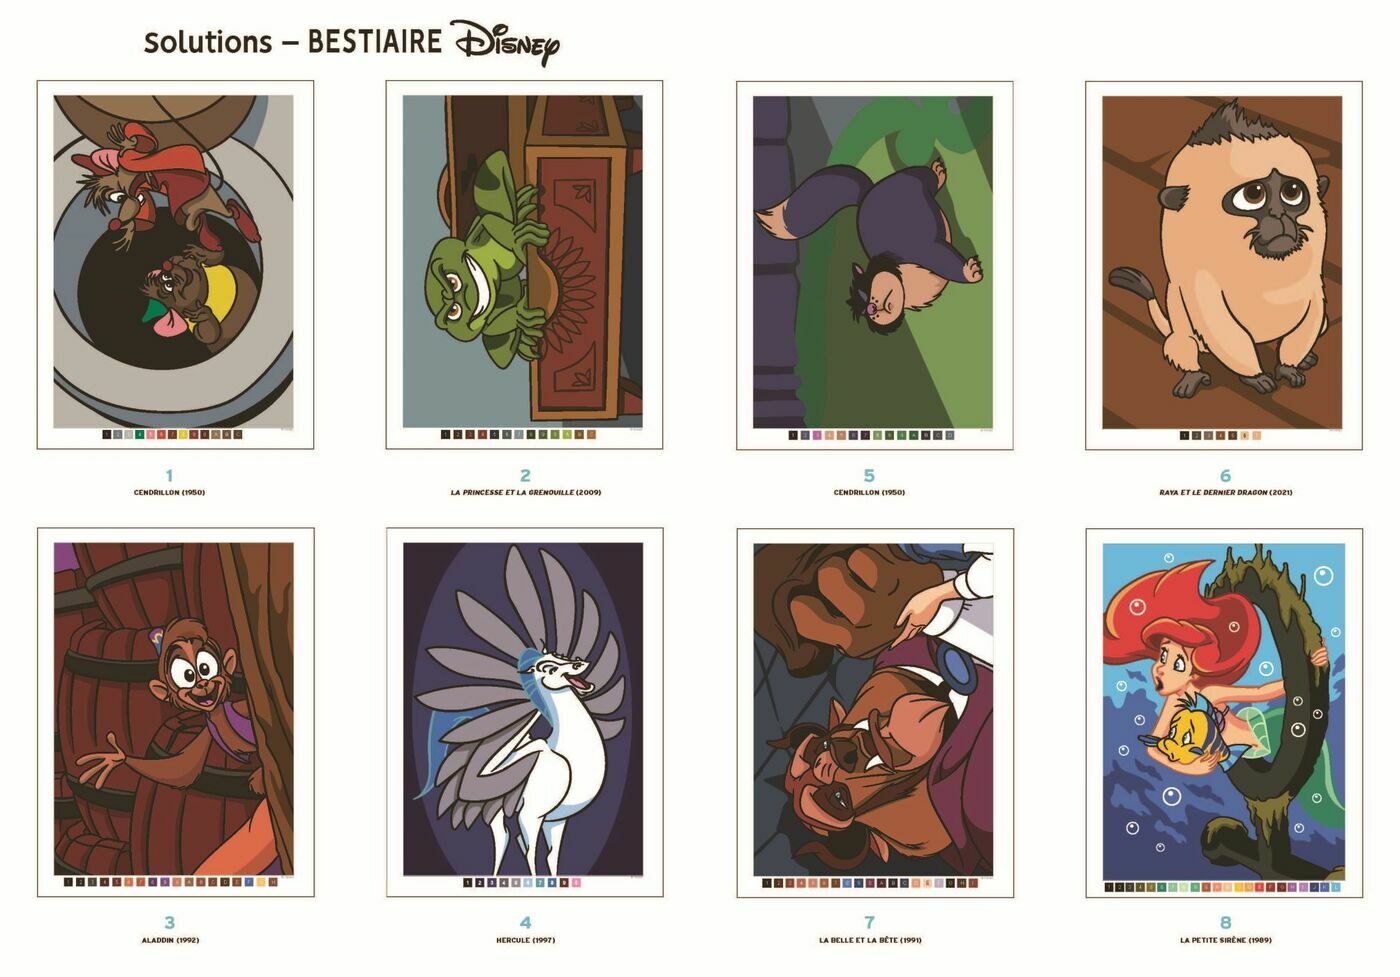 Pixar Coloriages mystères - 100 dessins à - Scrapmalin